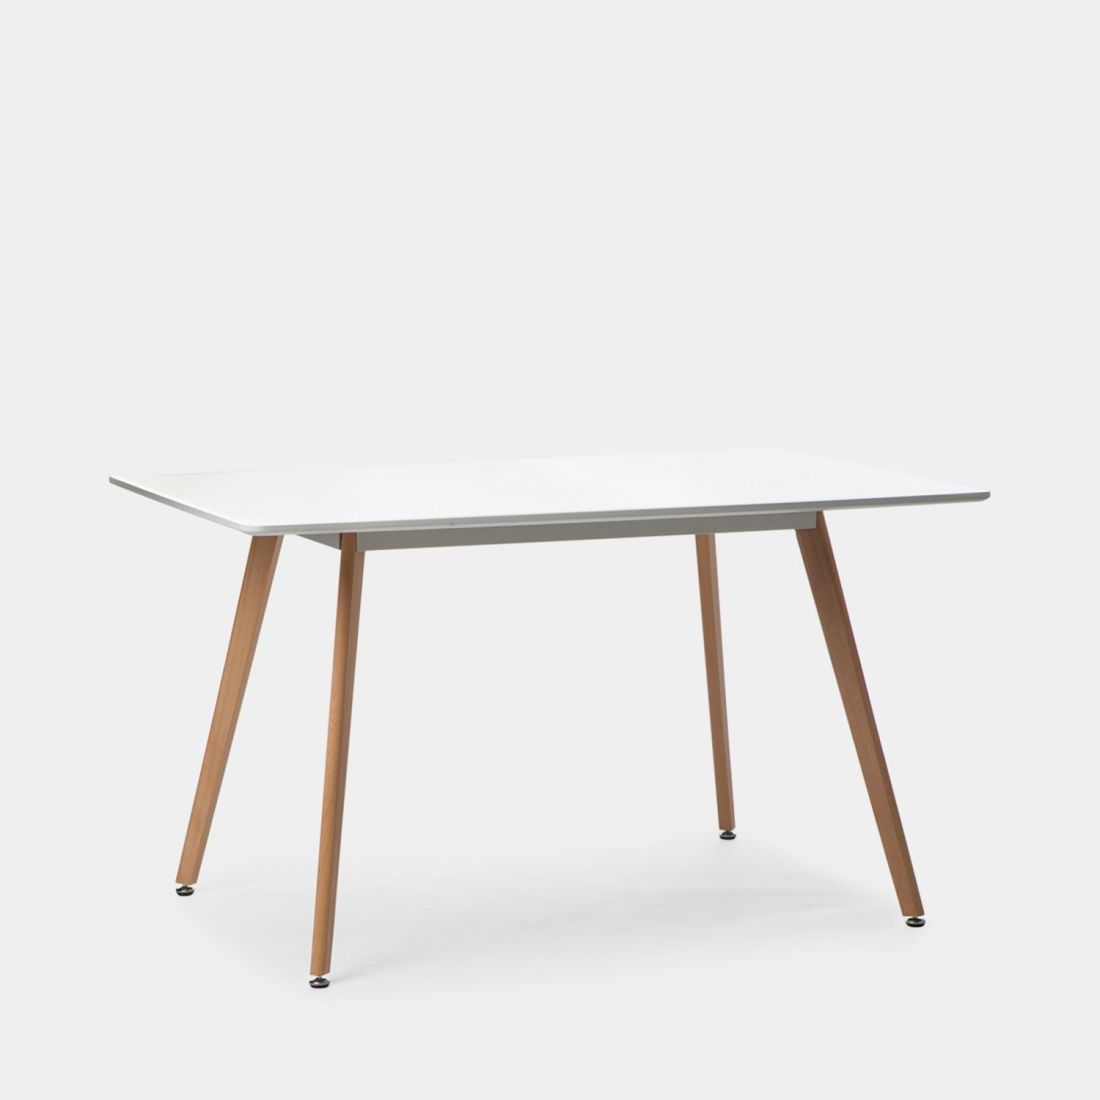 La mesa de comedor rectangular Laok es de estilo nórdico y minimalista. Se convierte en la elección segura si eres un apasionado del diseño escandinavo. De líneas rectas